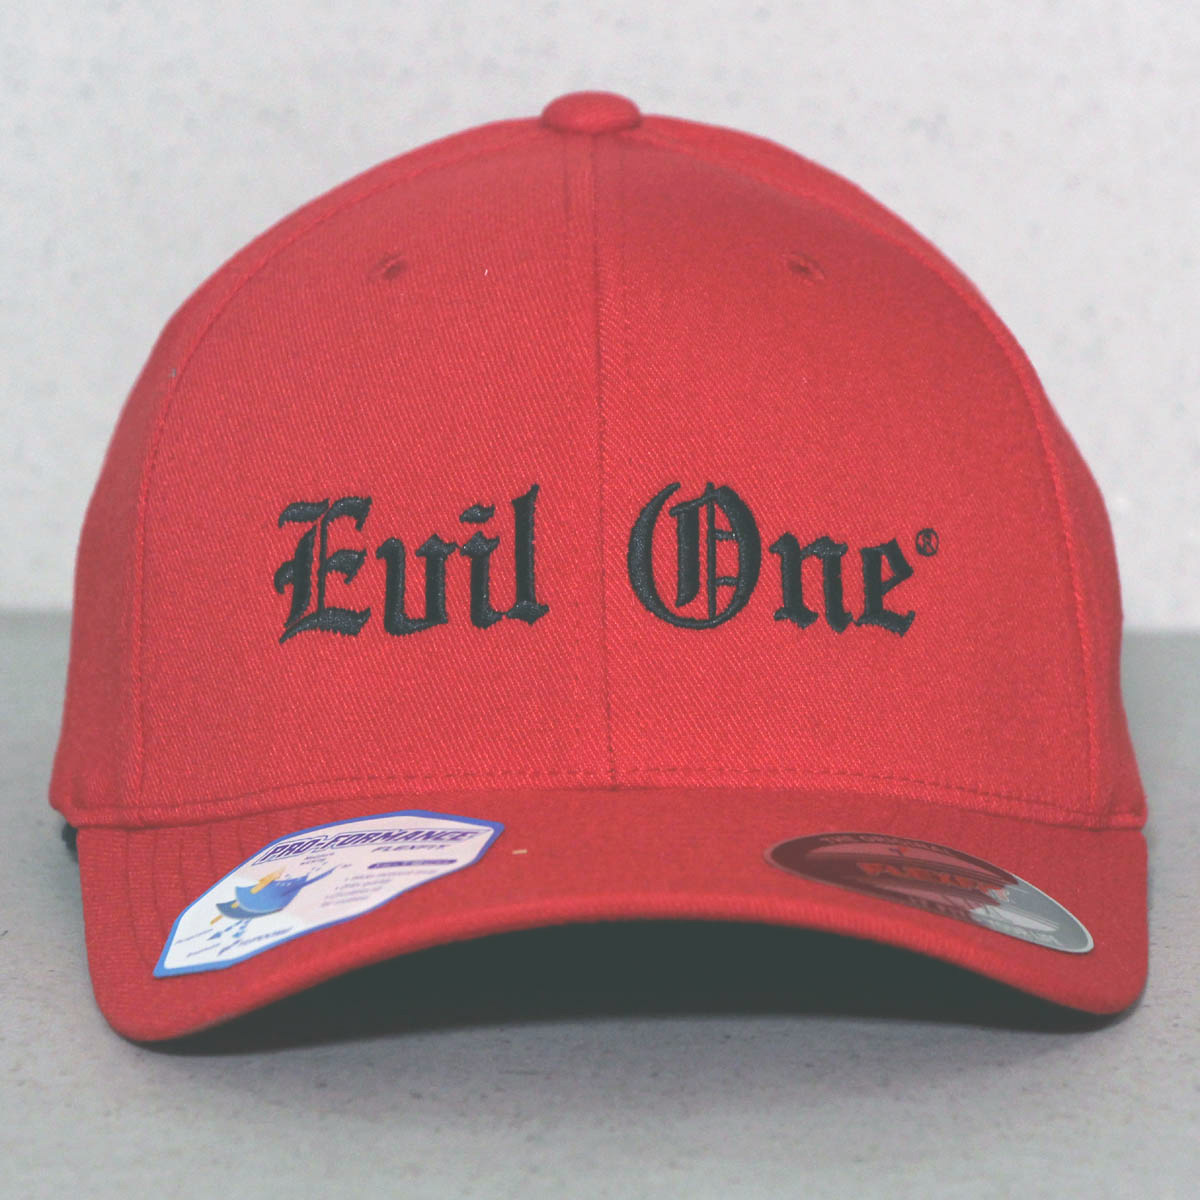 Red on Black Men's Evil Baseball Hat